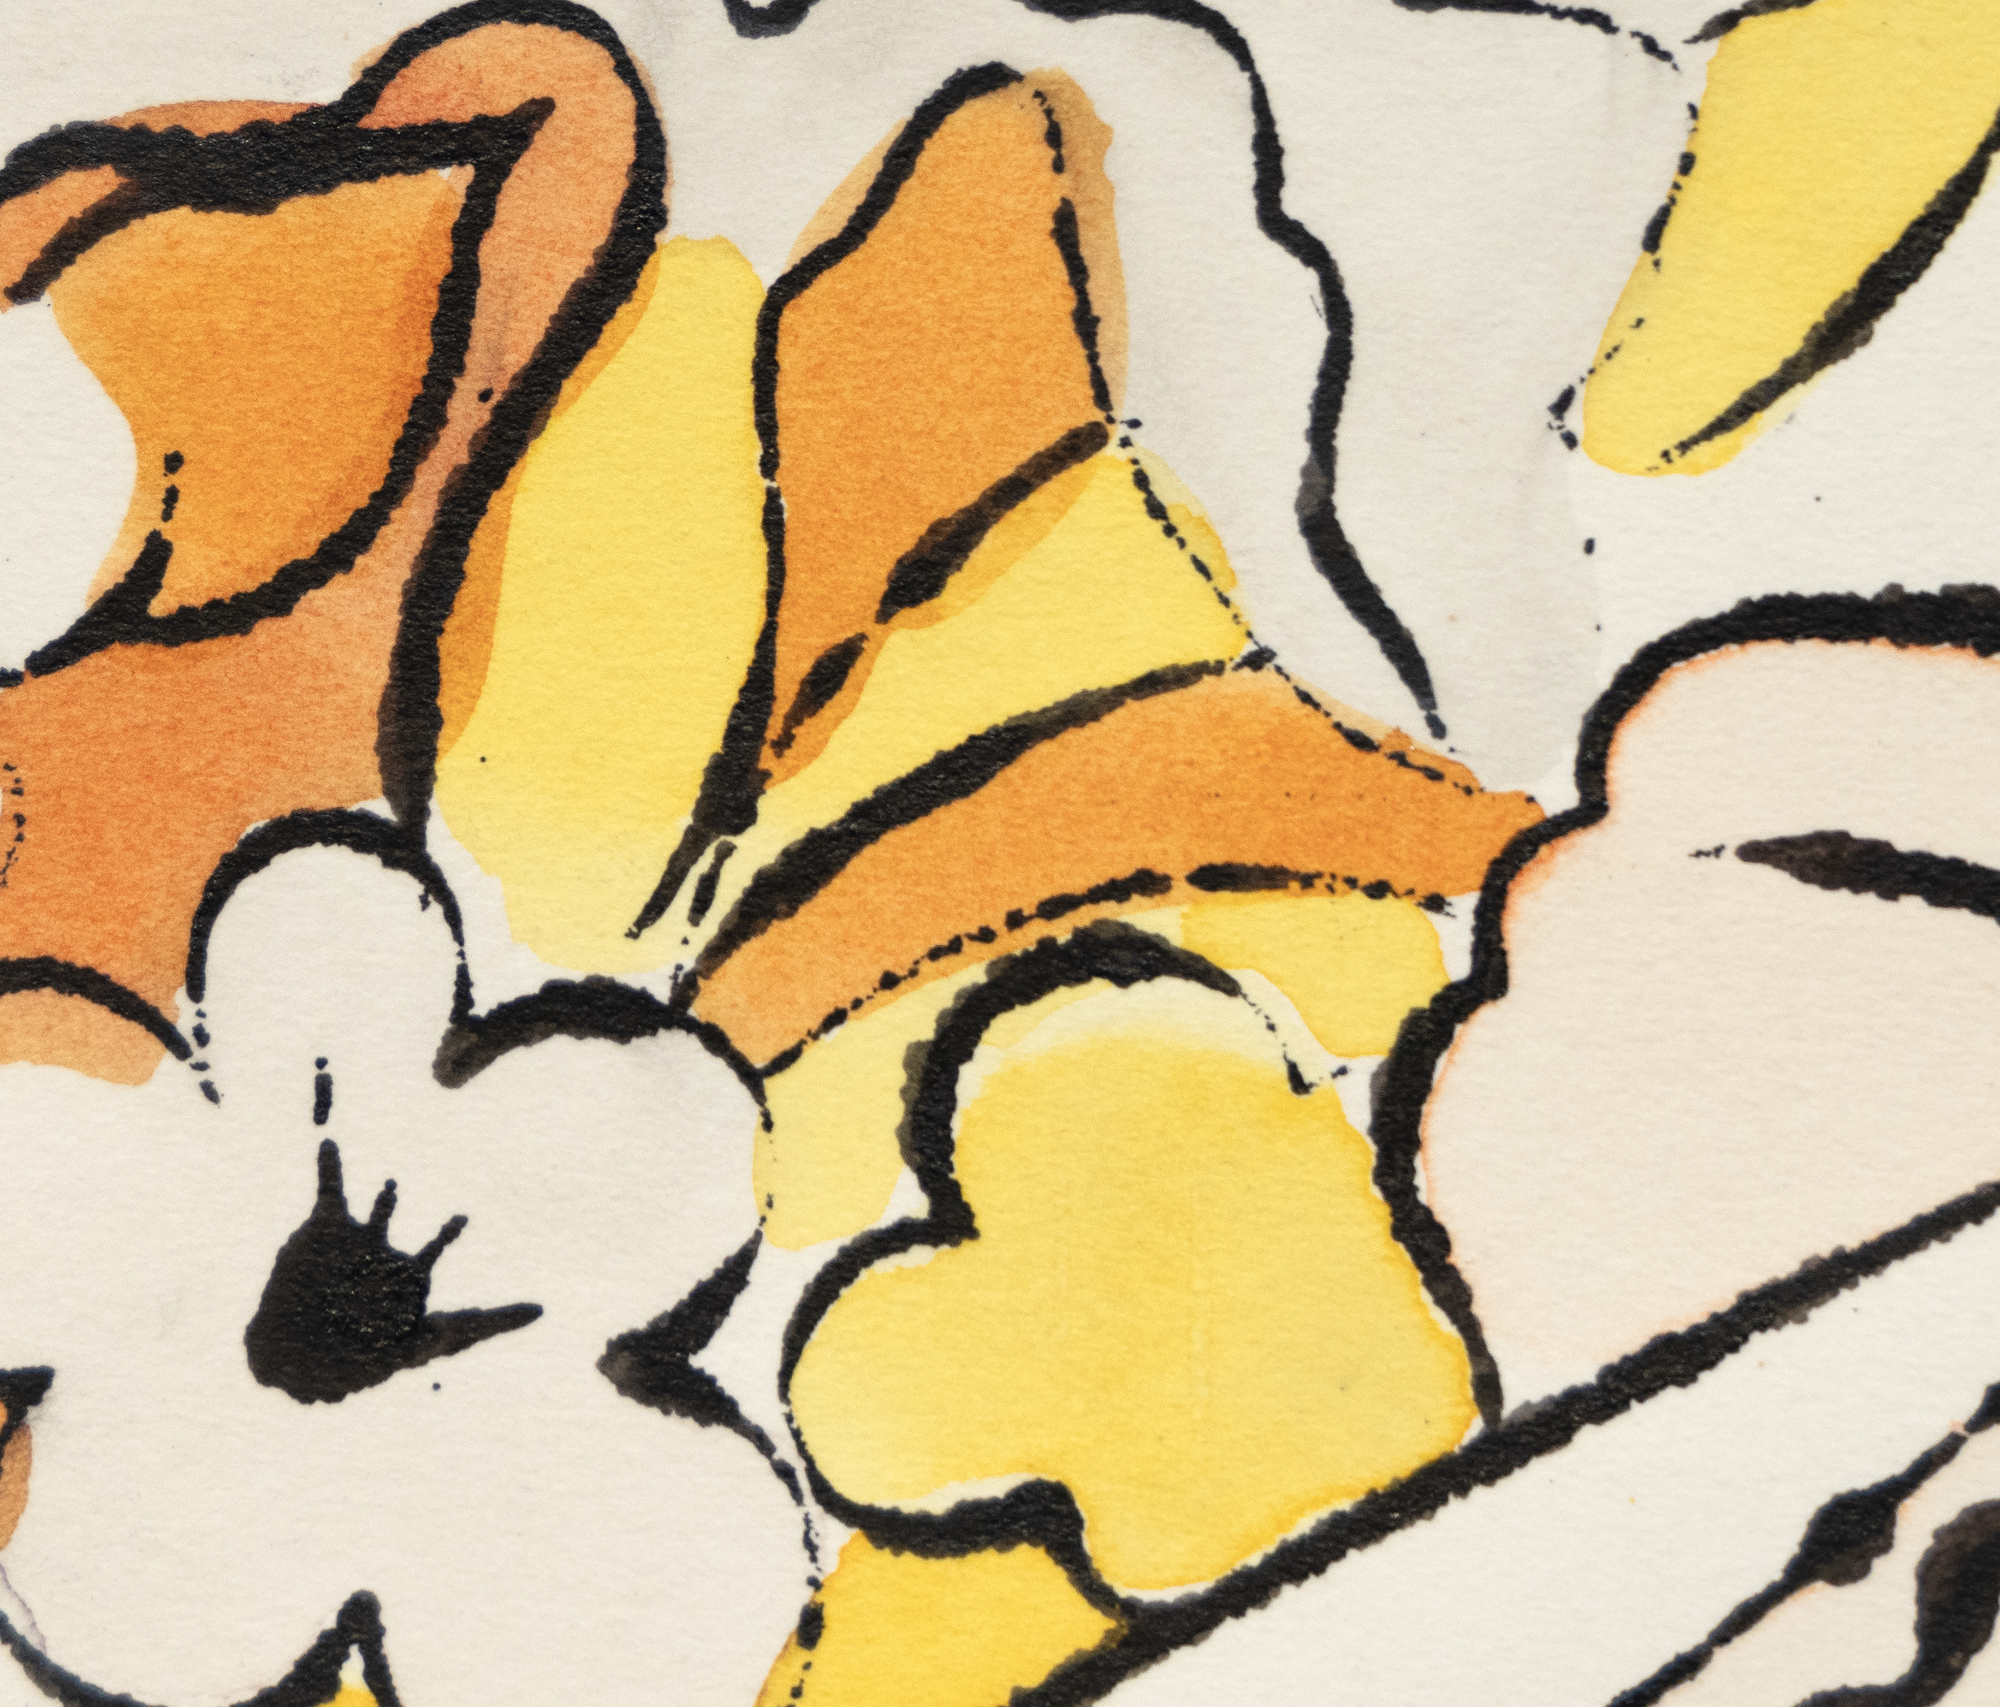 Souvent négligés, les dessins à l&#039;encre et au colorant de Warhol révèlent son talent pour réduire les motifs et les éléments à leur nature essentielle, grâce à une économie de trait et à une merveilleuse espièglerie qui caractérise chacun d&#039;entre eux. Ils nous rappellent souvent que l&#039;art peut être un vecteur efficace d&#039;humour et de fantaisie s&#039;il est simple et fluide. Untitled, Flowers est une préfiguration de sa célèbre mise en page pour Vogue en 1960, combinant des dessins de fleurs dans des couleurs fluorescentes. Elle anticipe la tendance précoce de Warhol à séparer la ligne de la couleur, un procédé qui donnera plus tard à ses images sérigraphiées leur immédiateté abstraite.